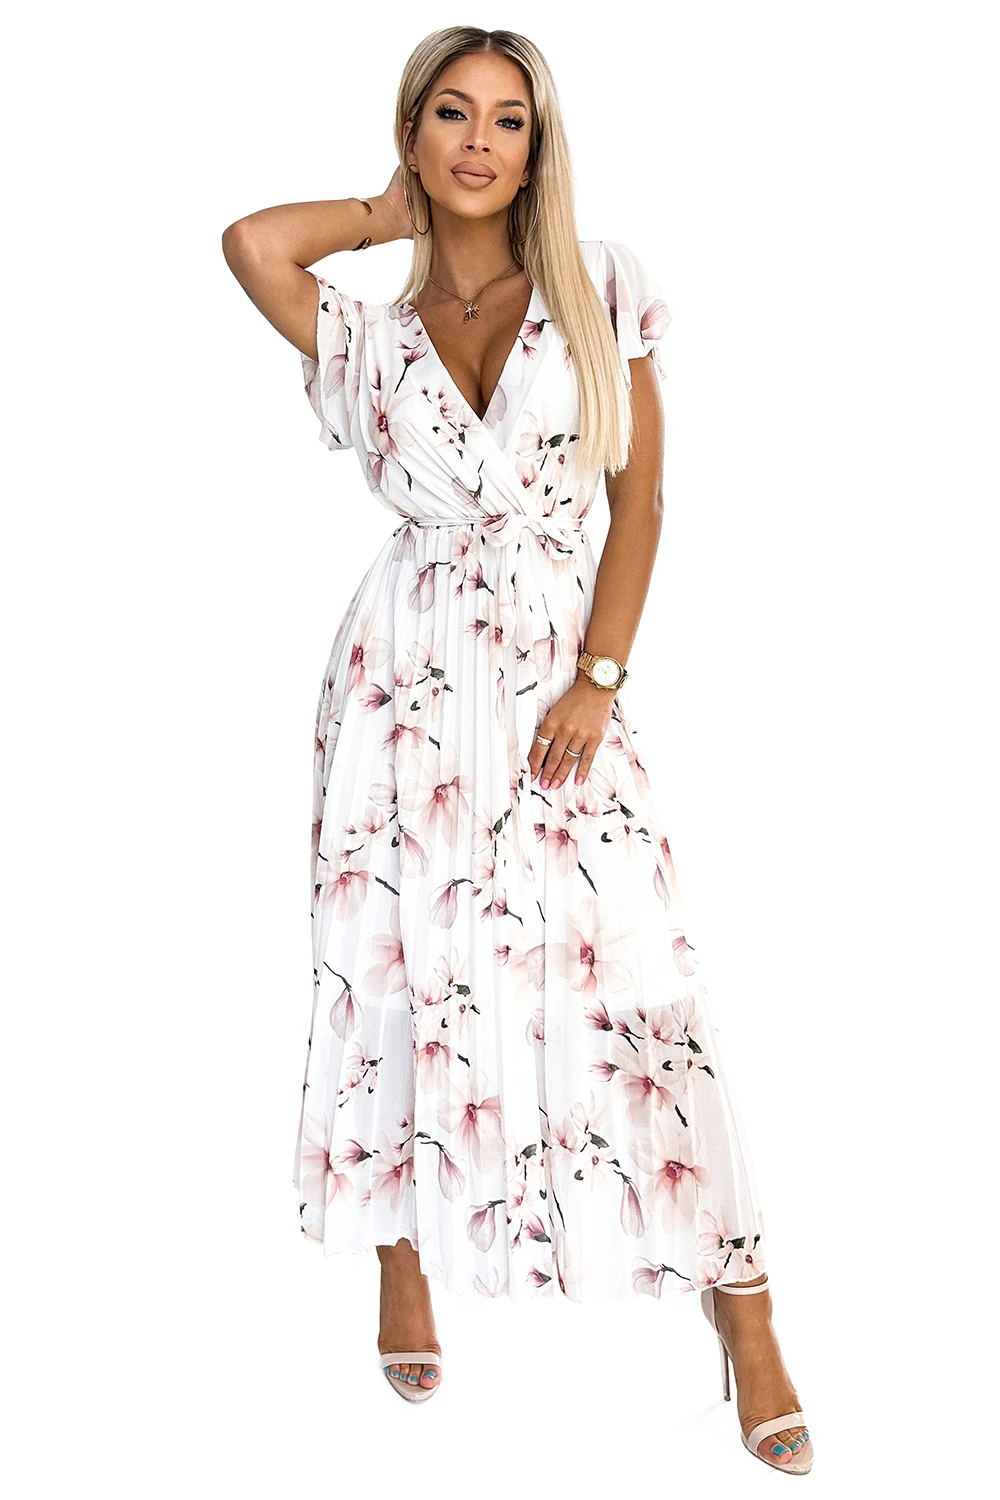 434-4 LISA Plisowana sukienka  midi z dekoltem i falbankami - kwiat brzoskwini na białym tle